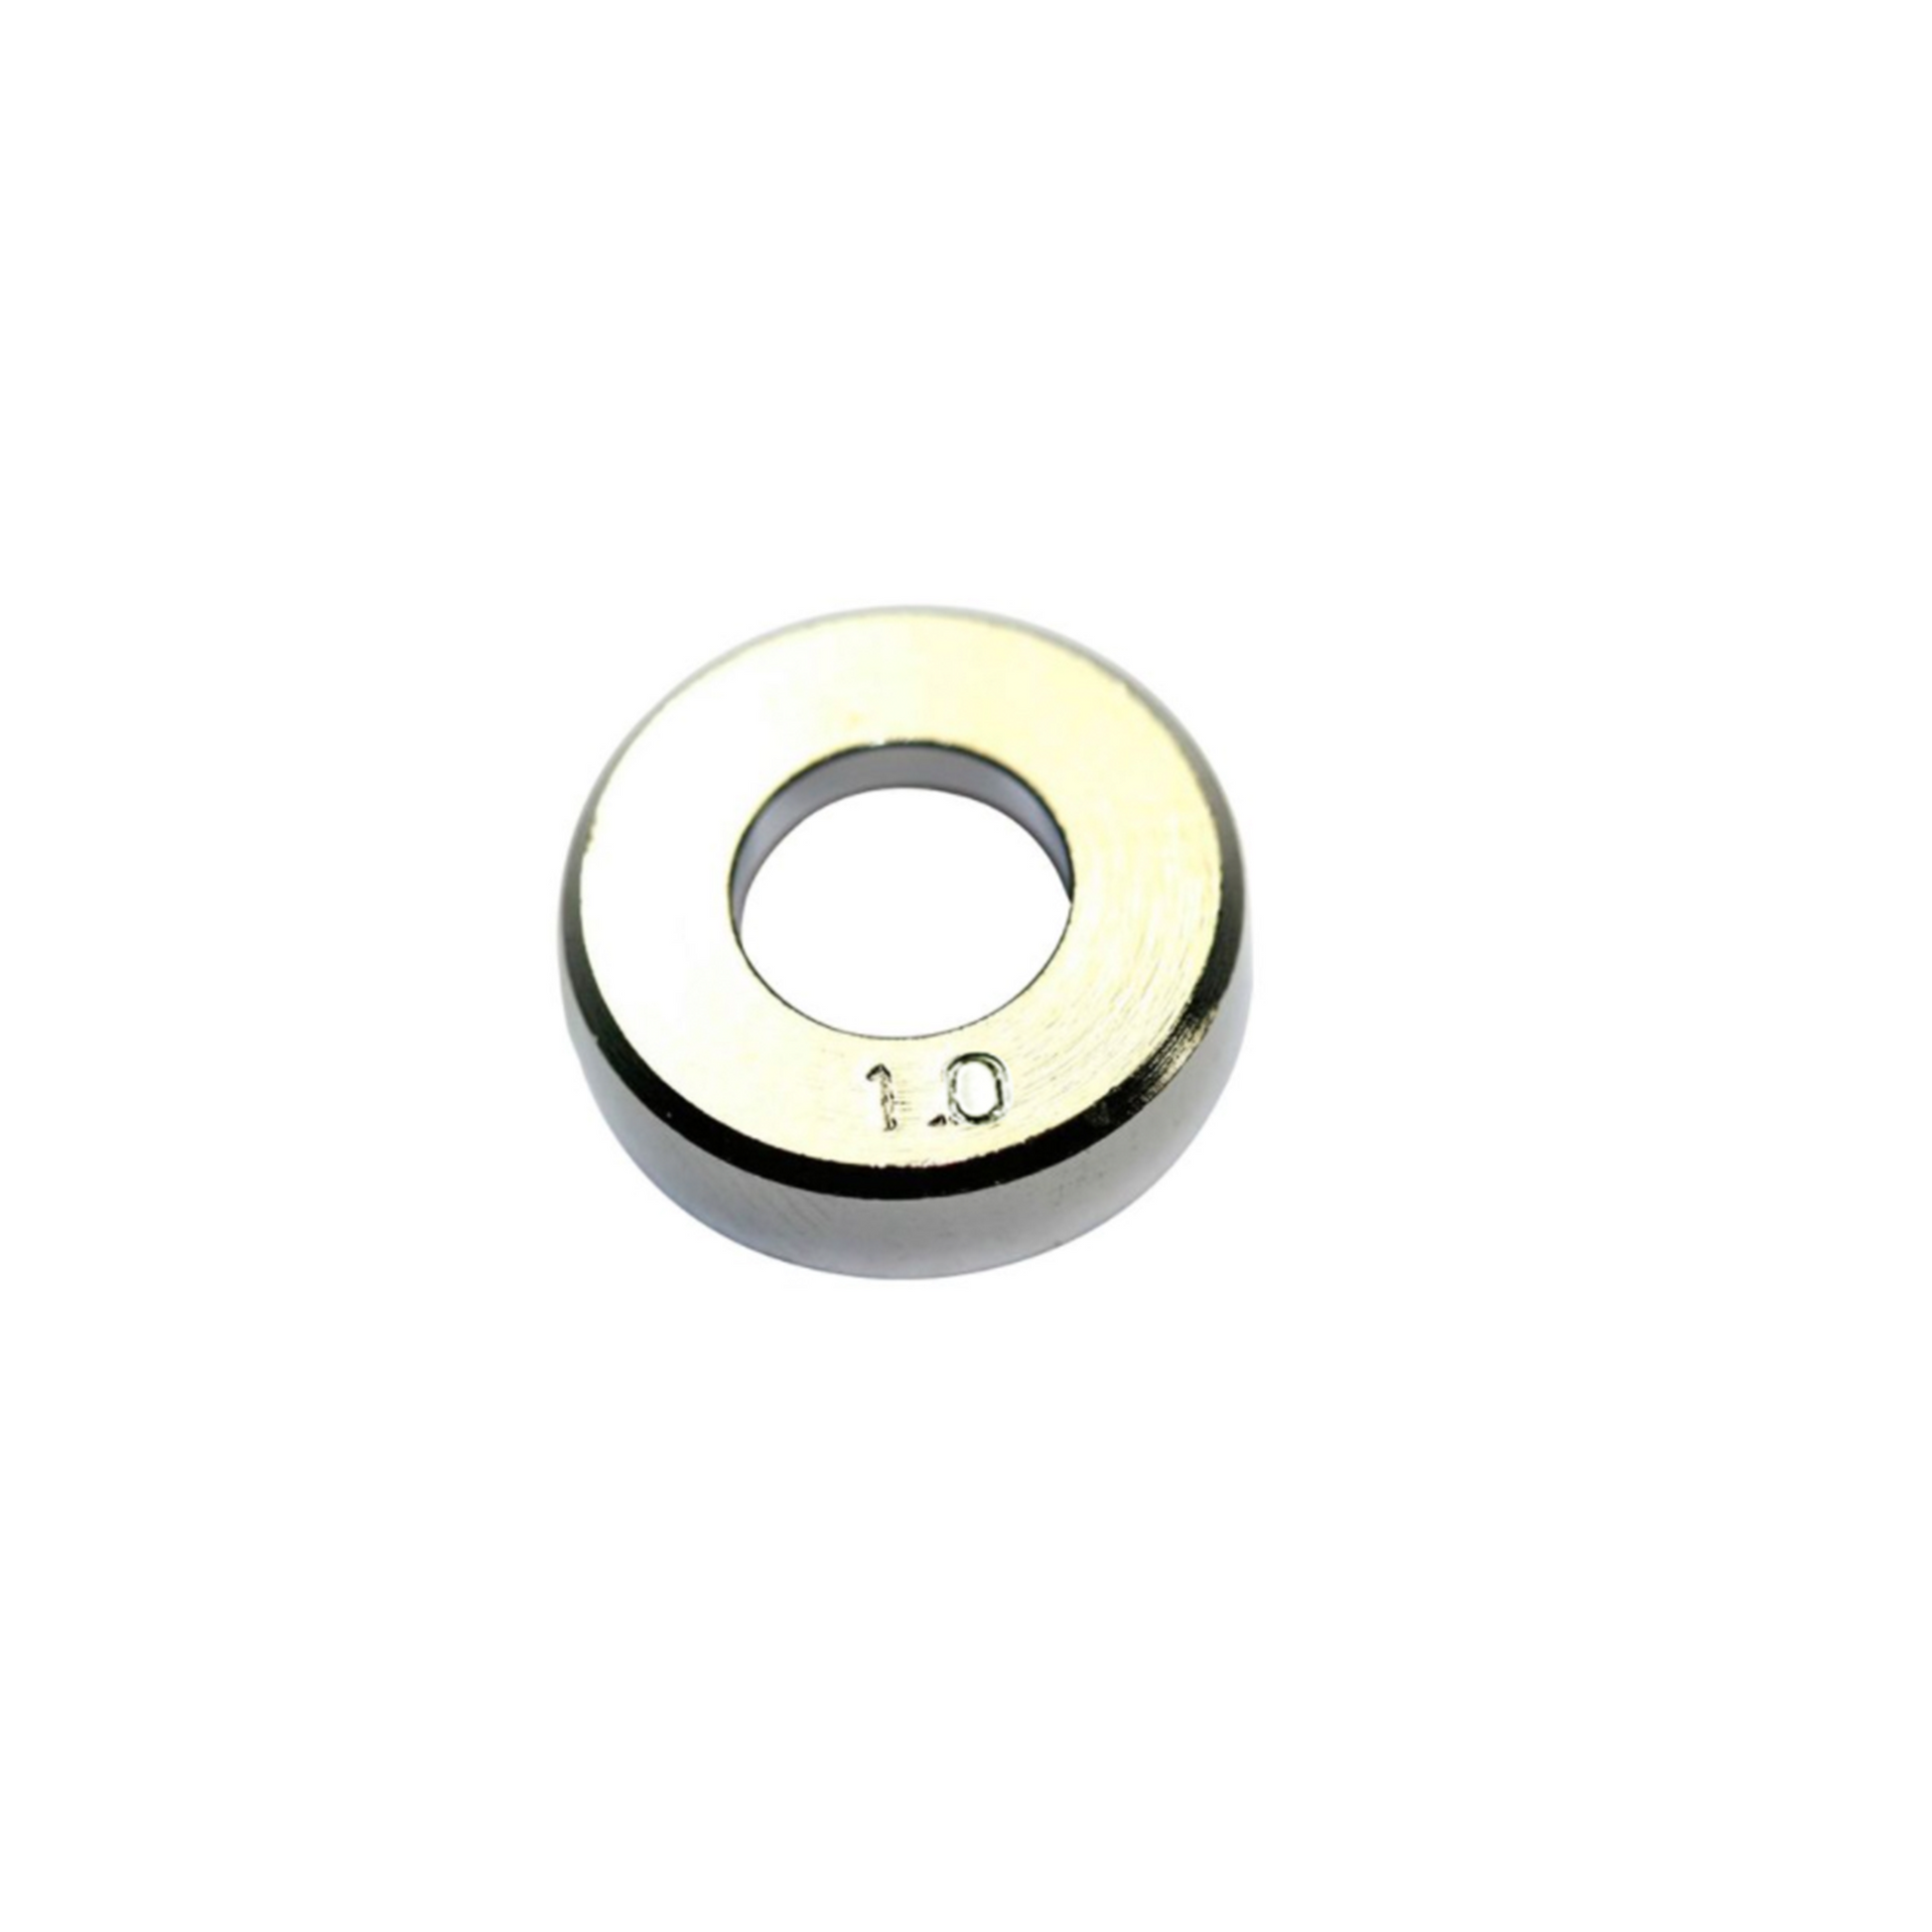 Hakko Products_ B1628 Solder diameter adjustment bracket 1.0MM_ Soldering Accessories_ Hakko Products